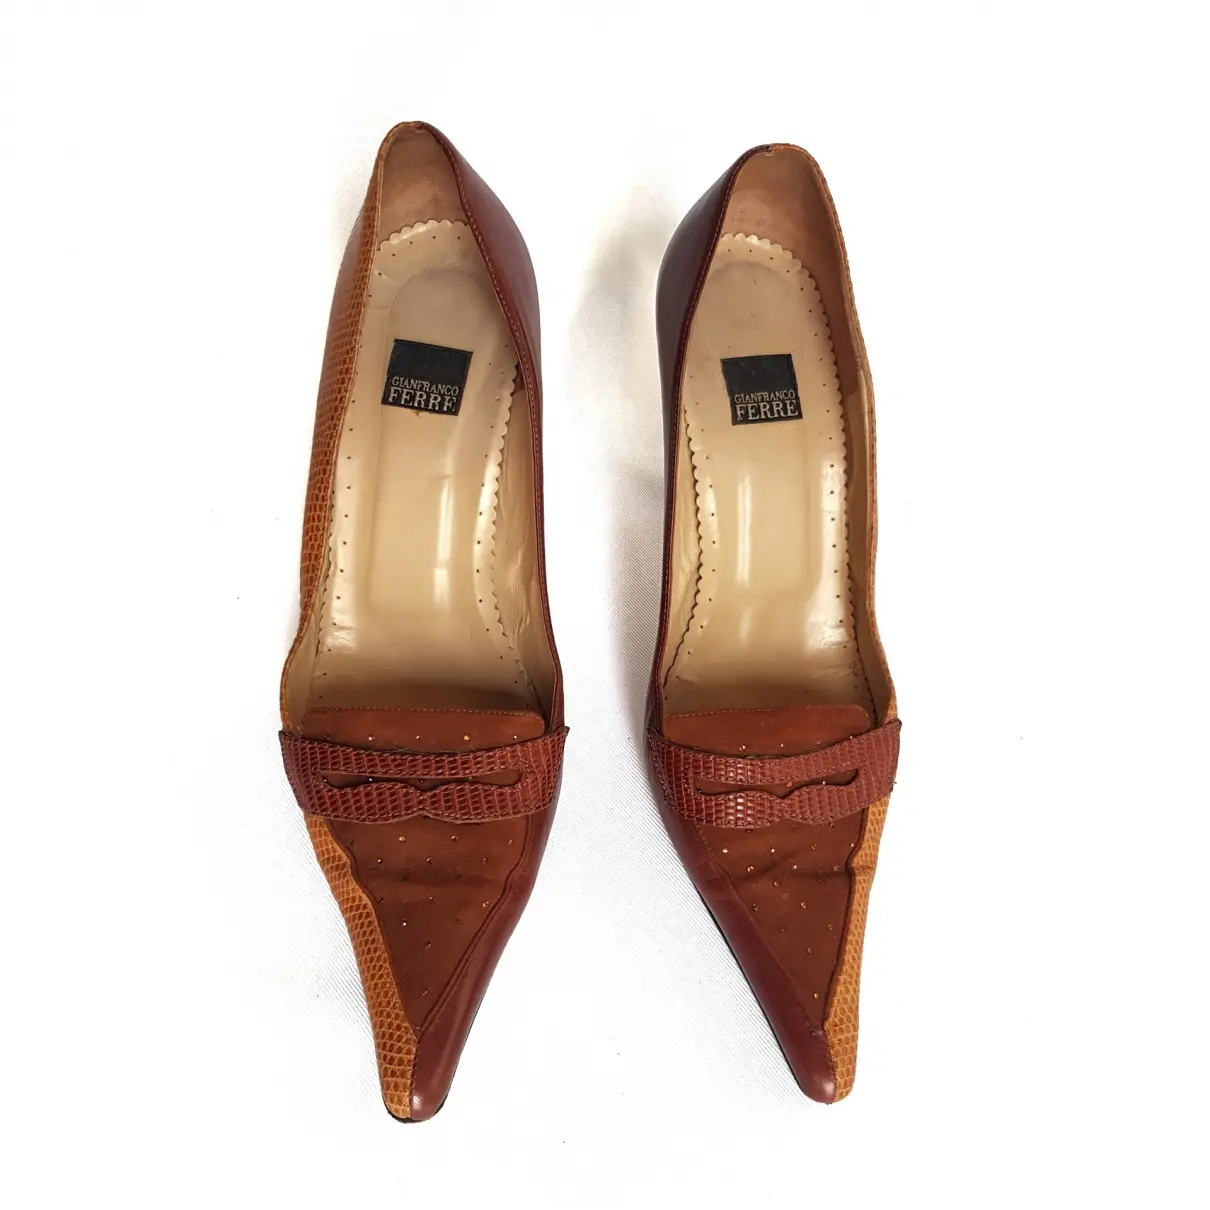 Buy Gianfranco Ferré Leather heels online